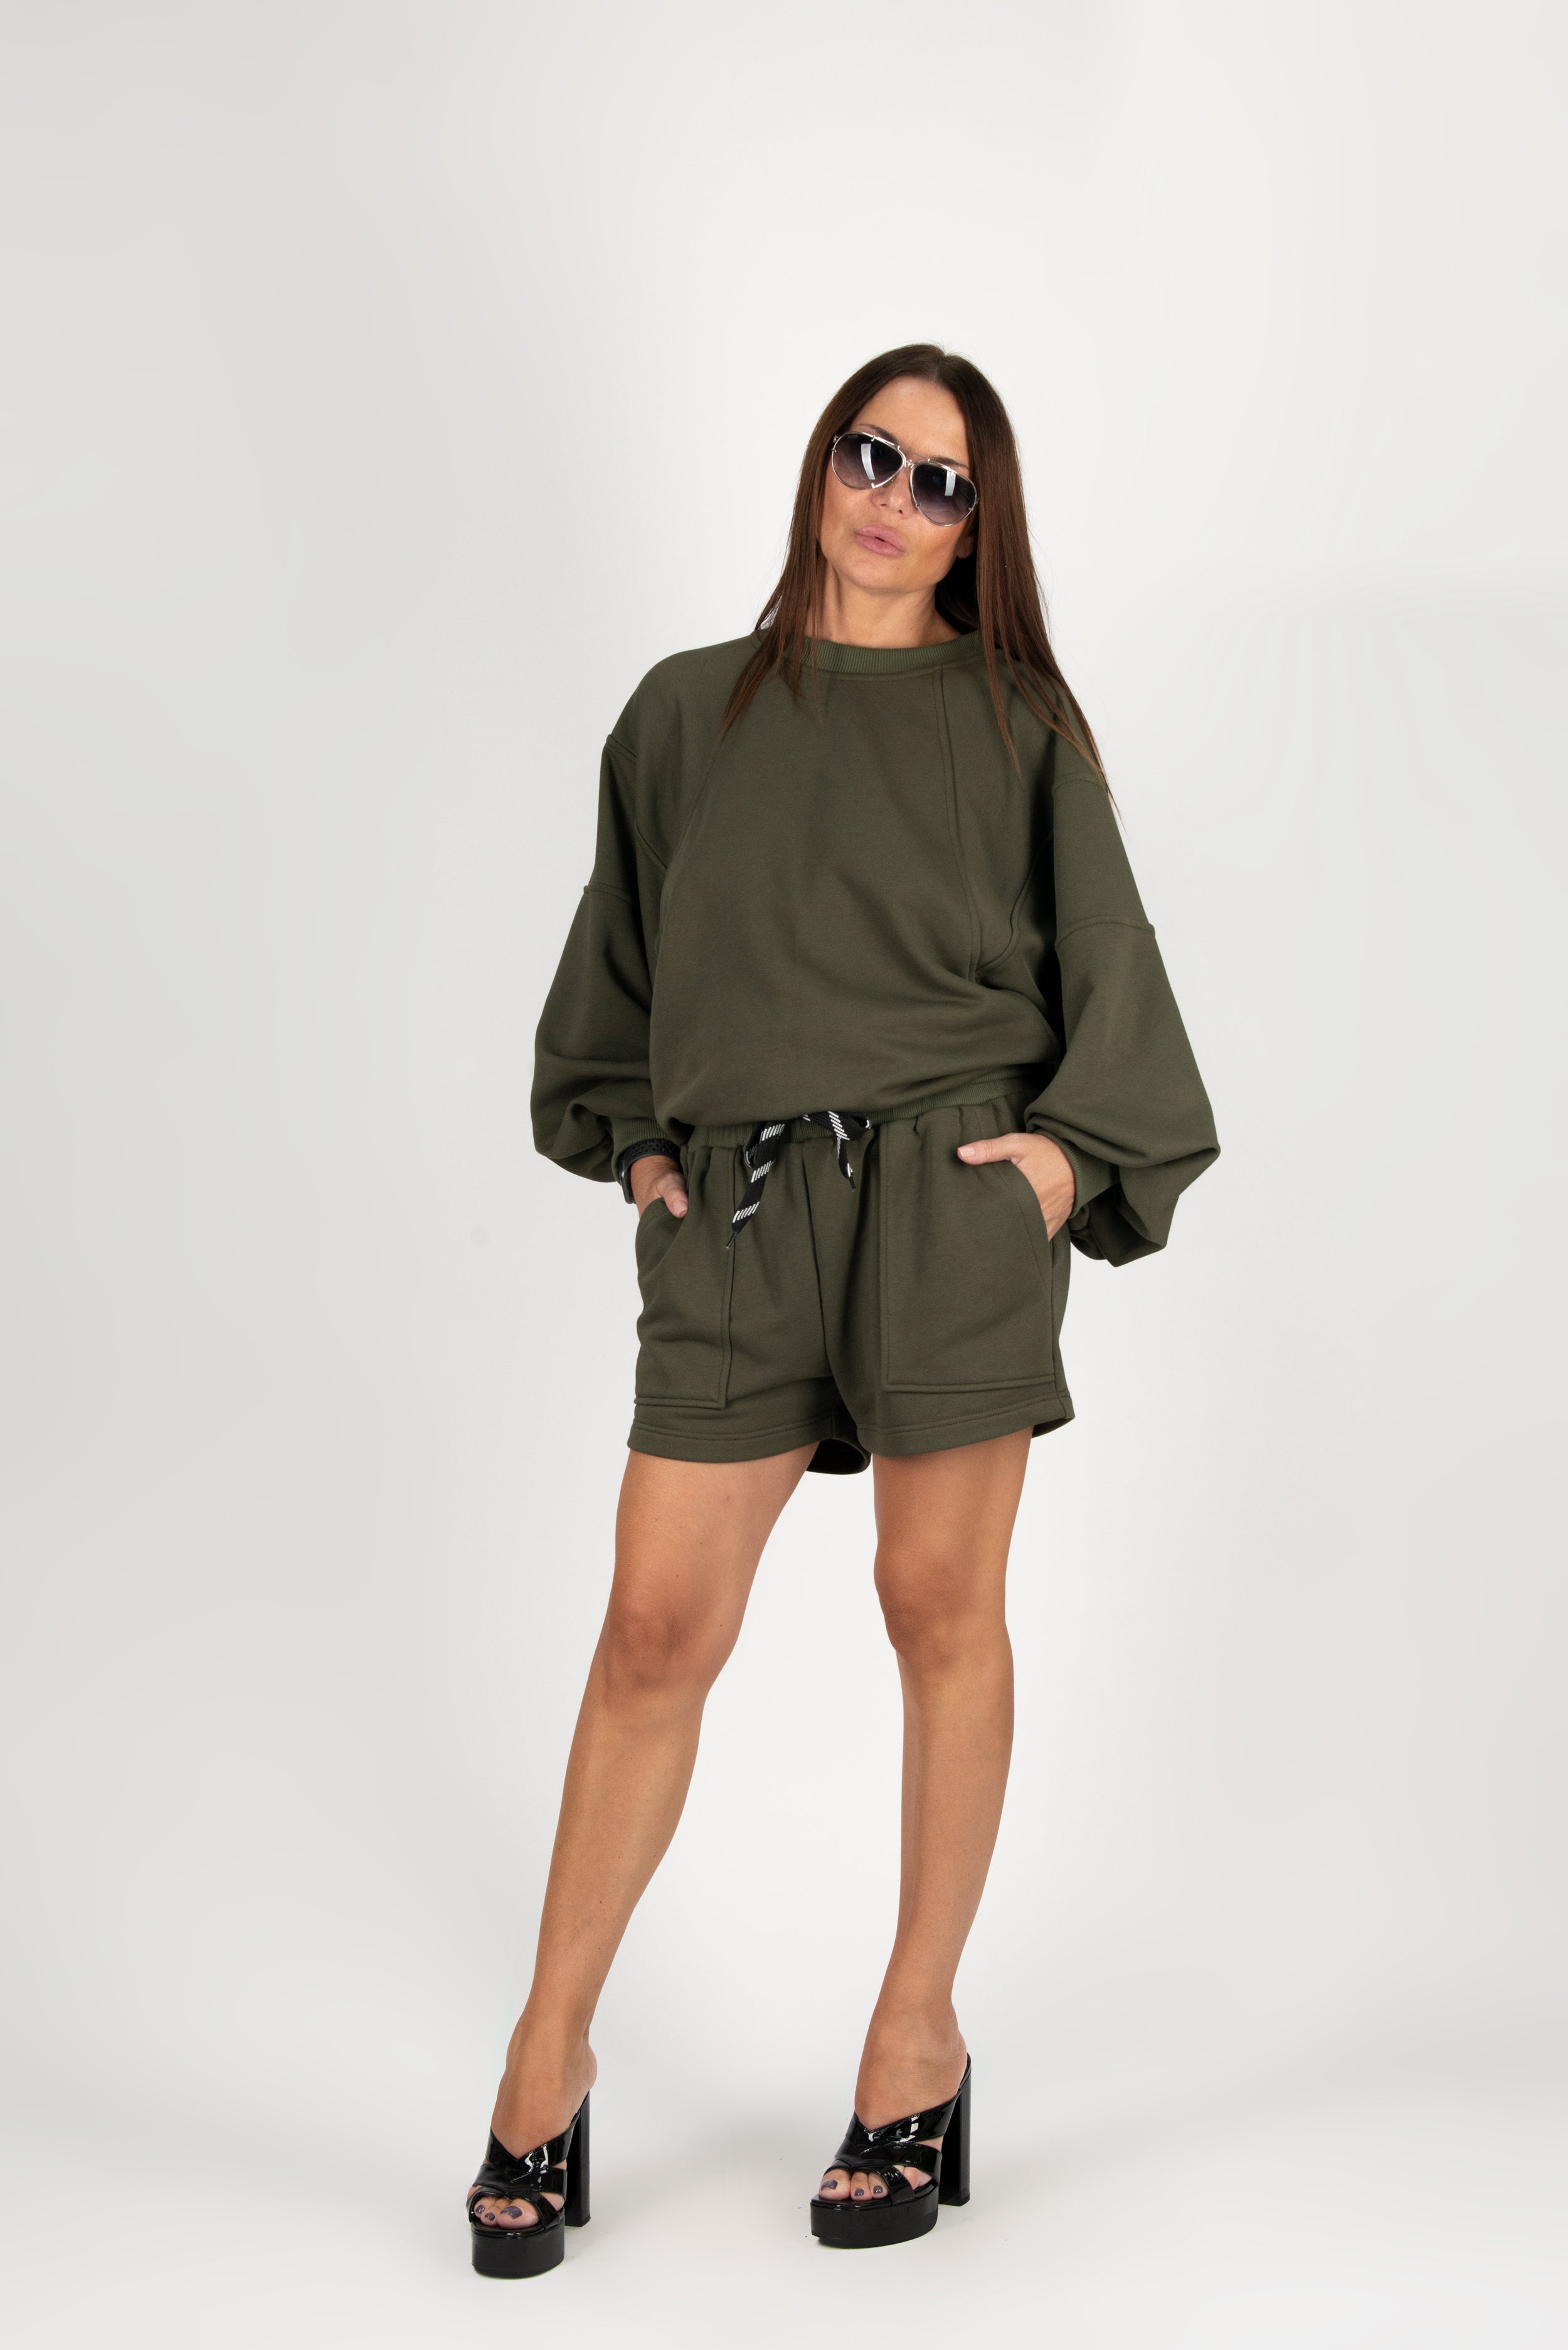 Military Green Sweatshirt by EUG Fashion